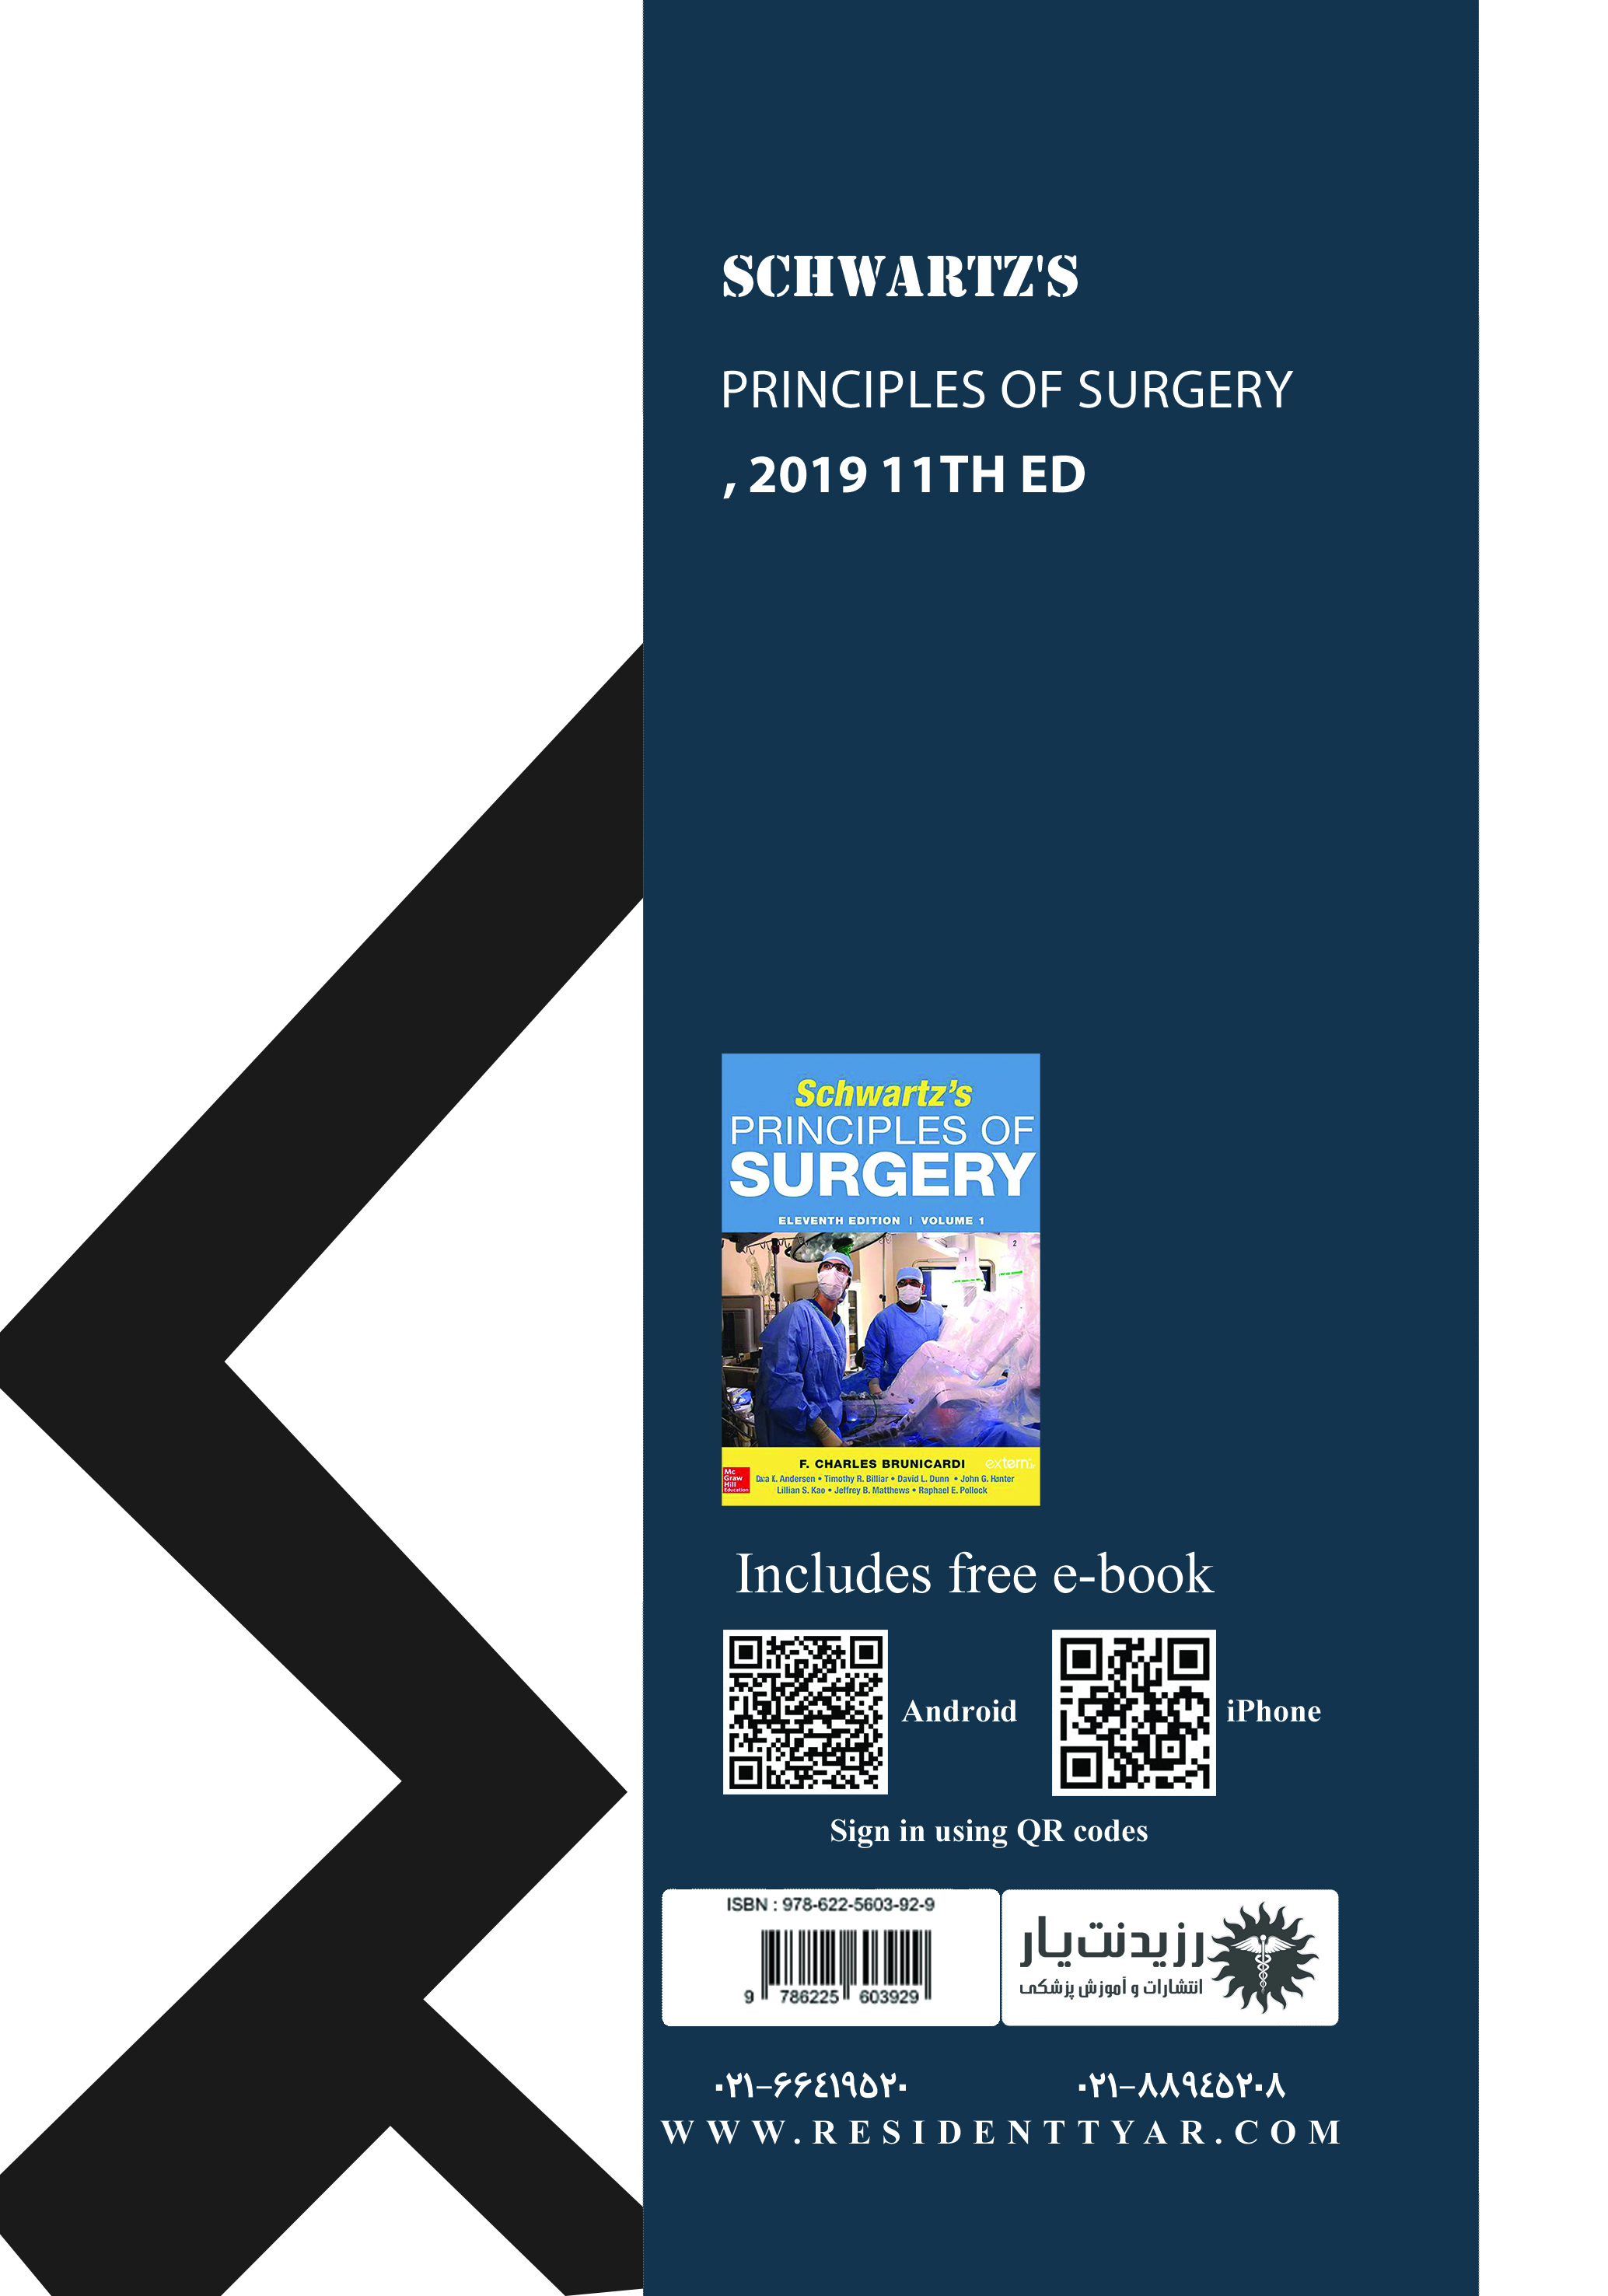   جلد 11 جراحی عمومی (پیوند،انکولوژی،اورولوژی،ارتوپدی،پروسیجر جراحی در ICU،نقش جراح در بلایا،رهبری در جراحی،جراحی در سالمندی،مراقبت پایانی حیات،گزش و گاز گرفتگی) - پشت جلد